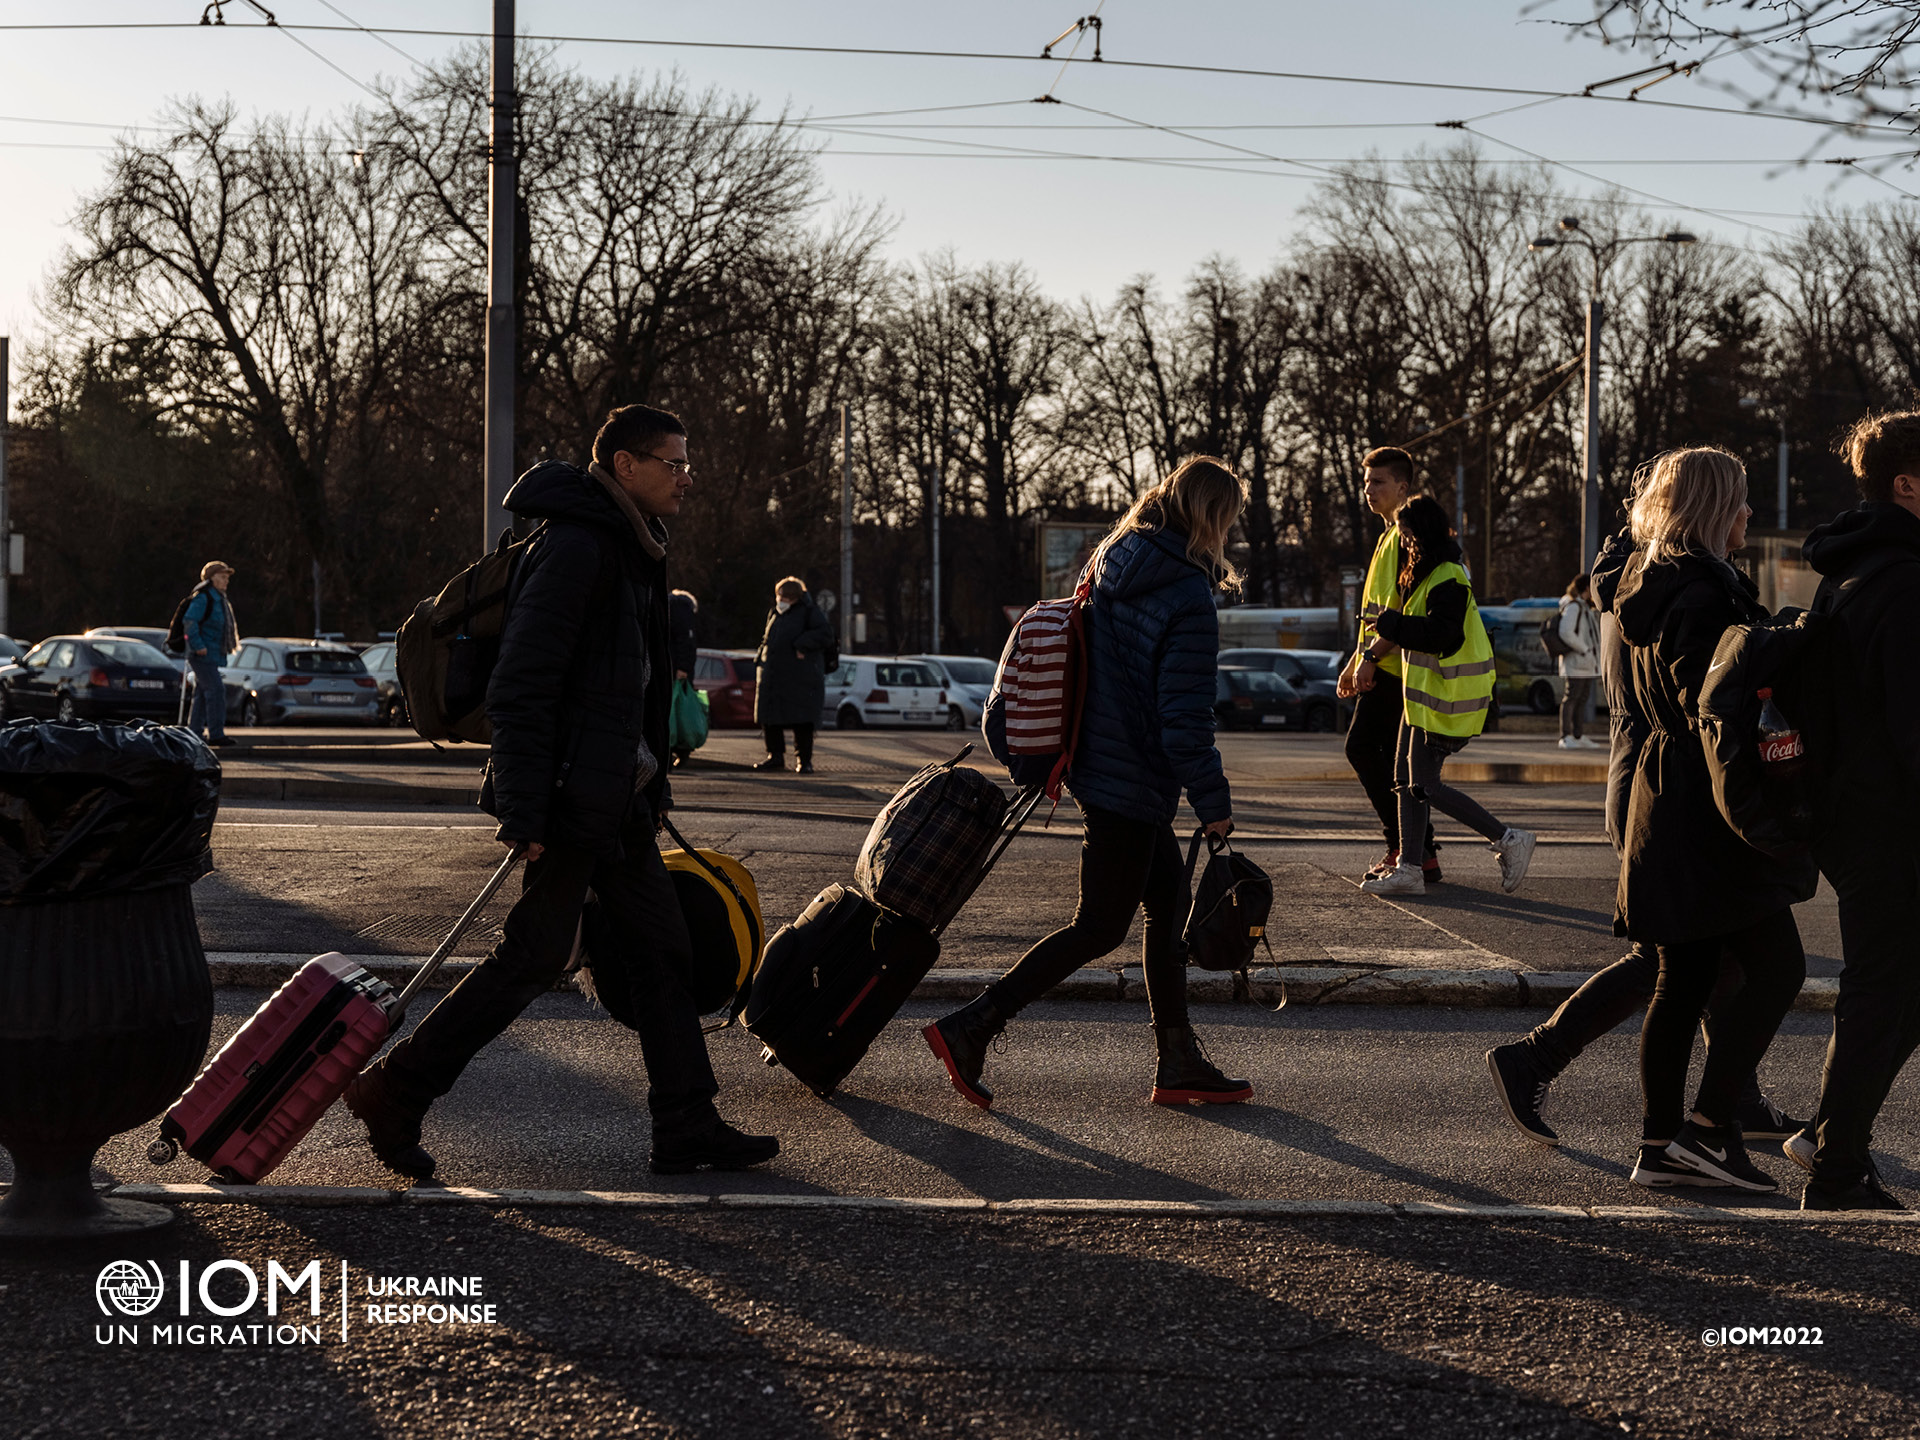 People fleeing war in Ukraine. Photo © International Organization for Migration (IOM) 2022.